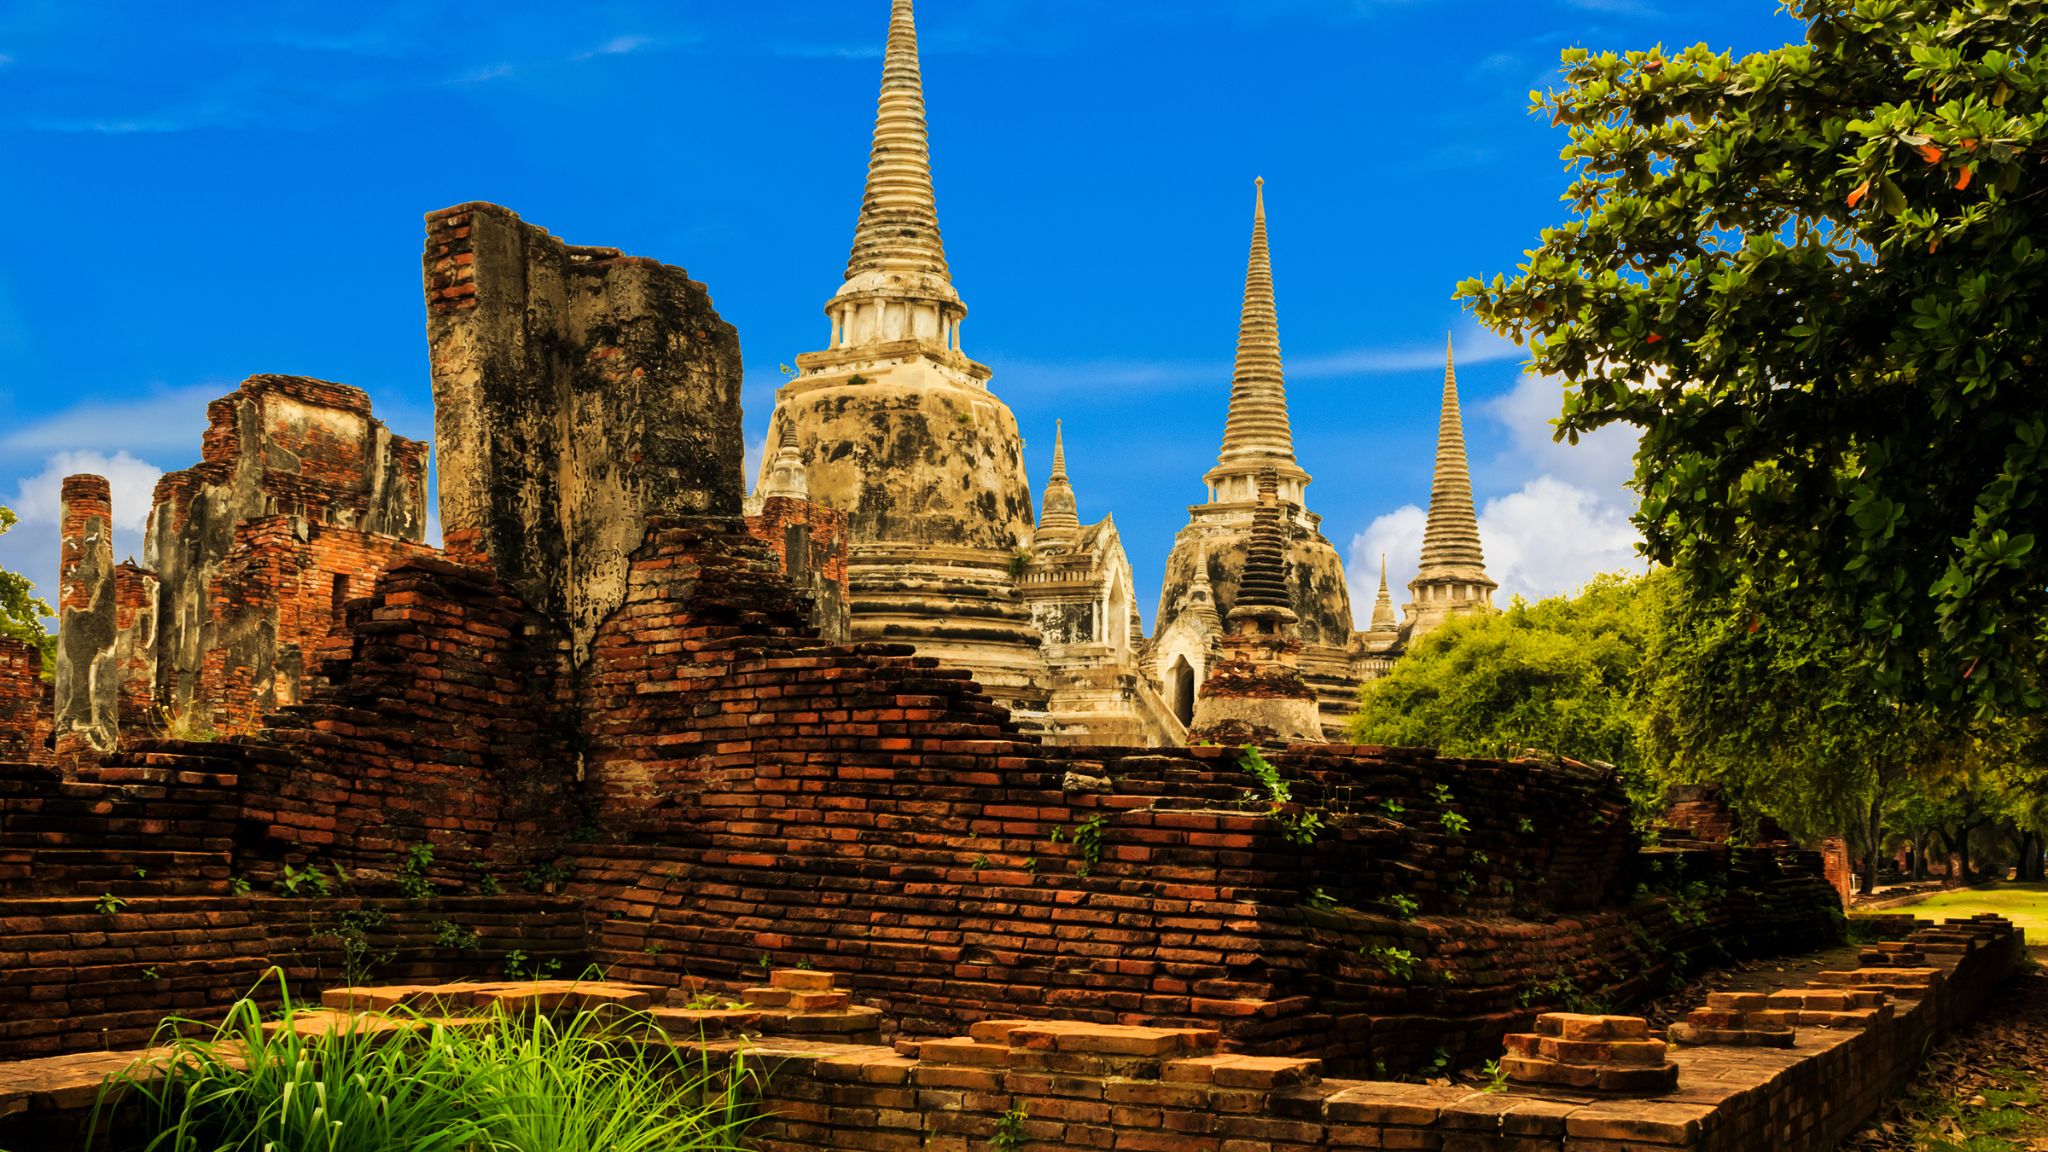 Day 3 The Ruined Wat Phra Sri Sanphet